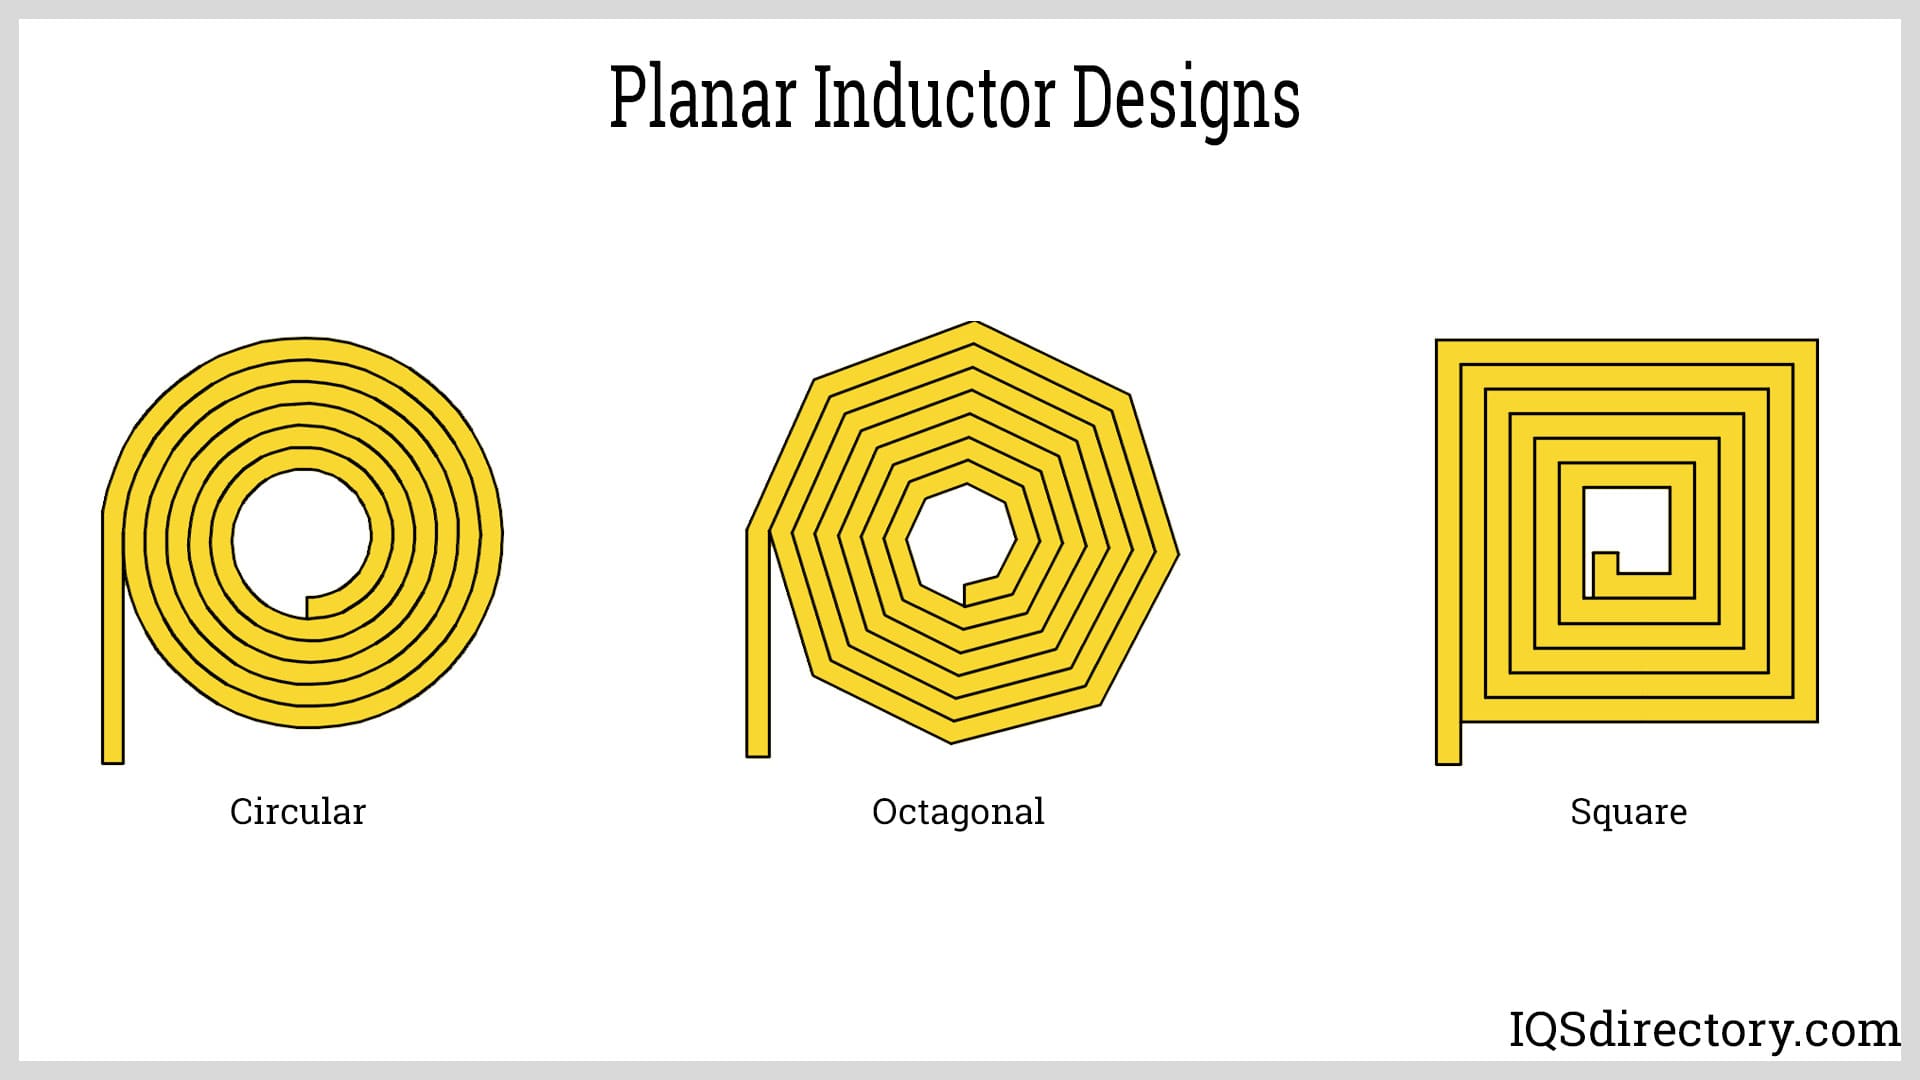 Planar Inductor Designs